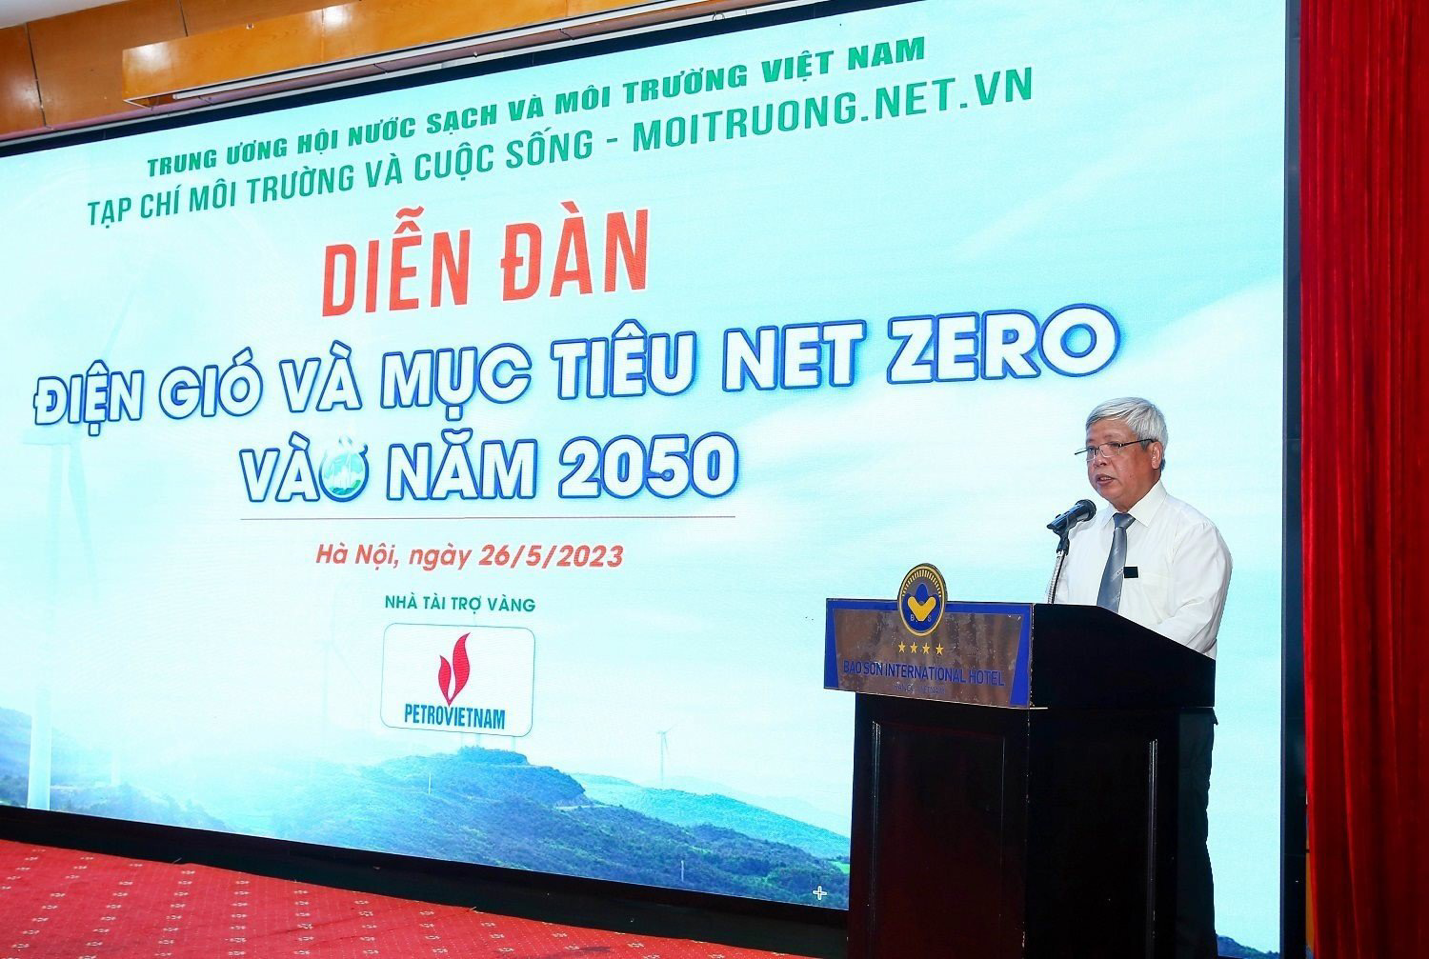 Phát triển điện gió hướng tới mục tiêu Net Zero vào năm 2050